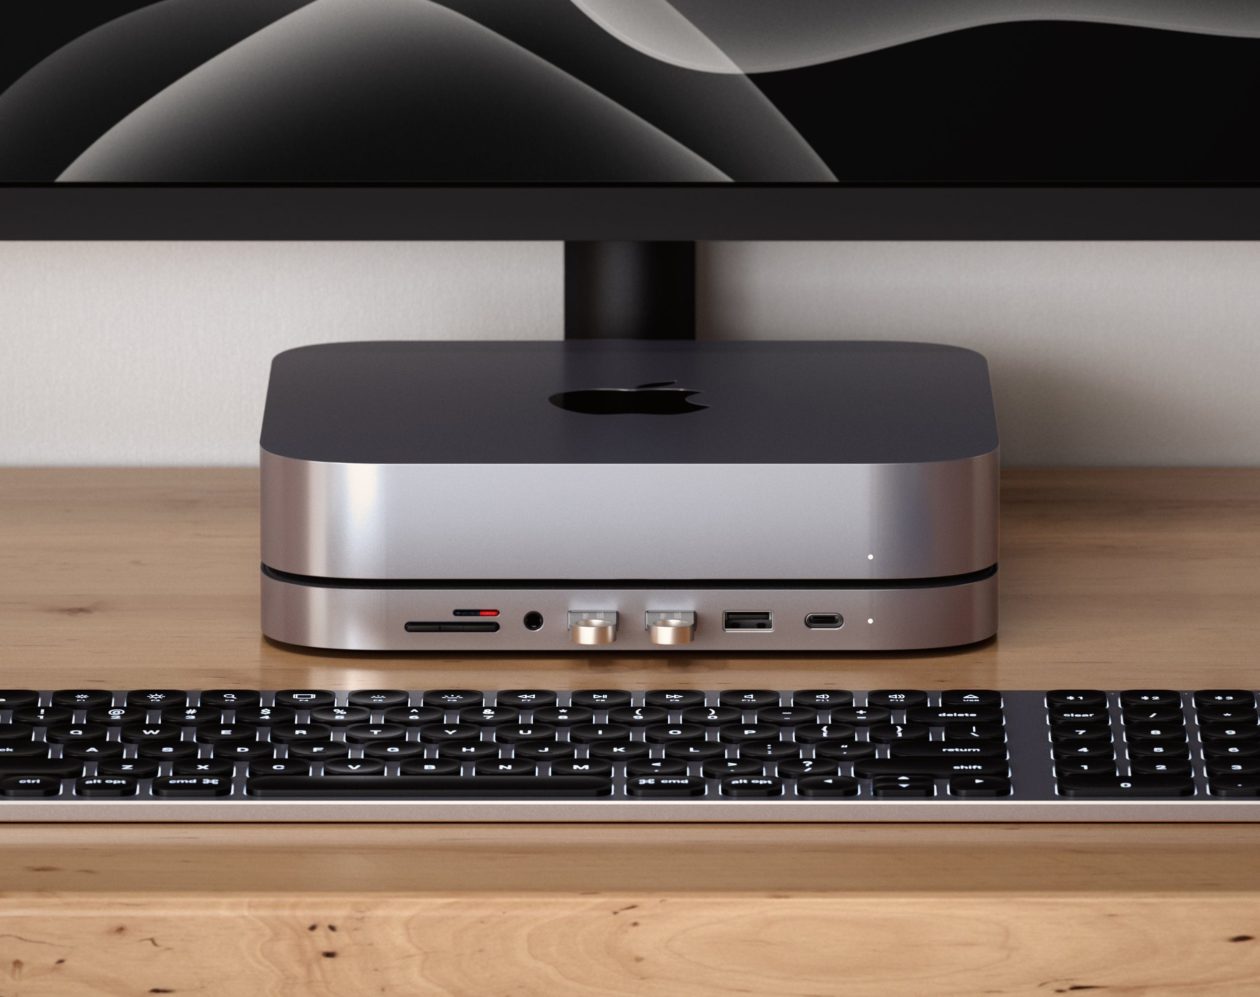 Satechi's new hub turns Mac mini into a “Pro”